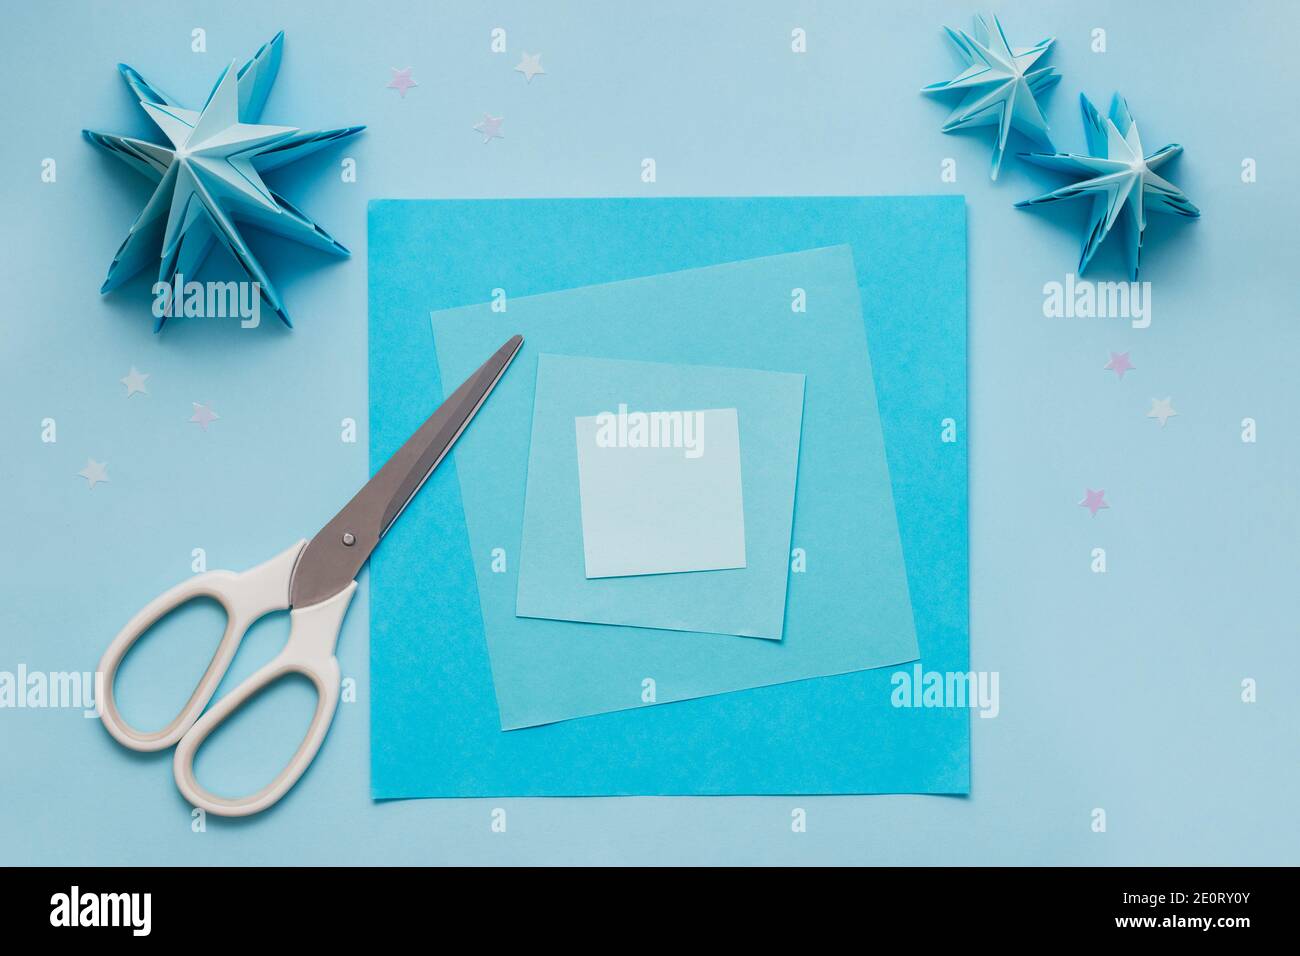 Semplice albero di Natale 3D origami fatto di carta blu. Istruzioni passo per passo, passo 1. Preparare fogli quadrati di carta di diversi colori e formati Foto Stock